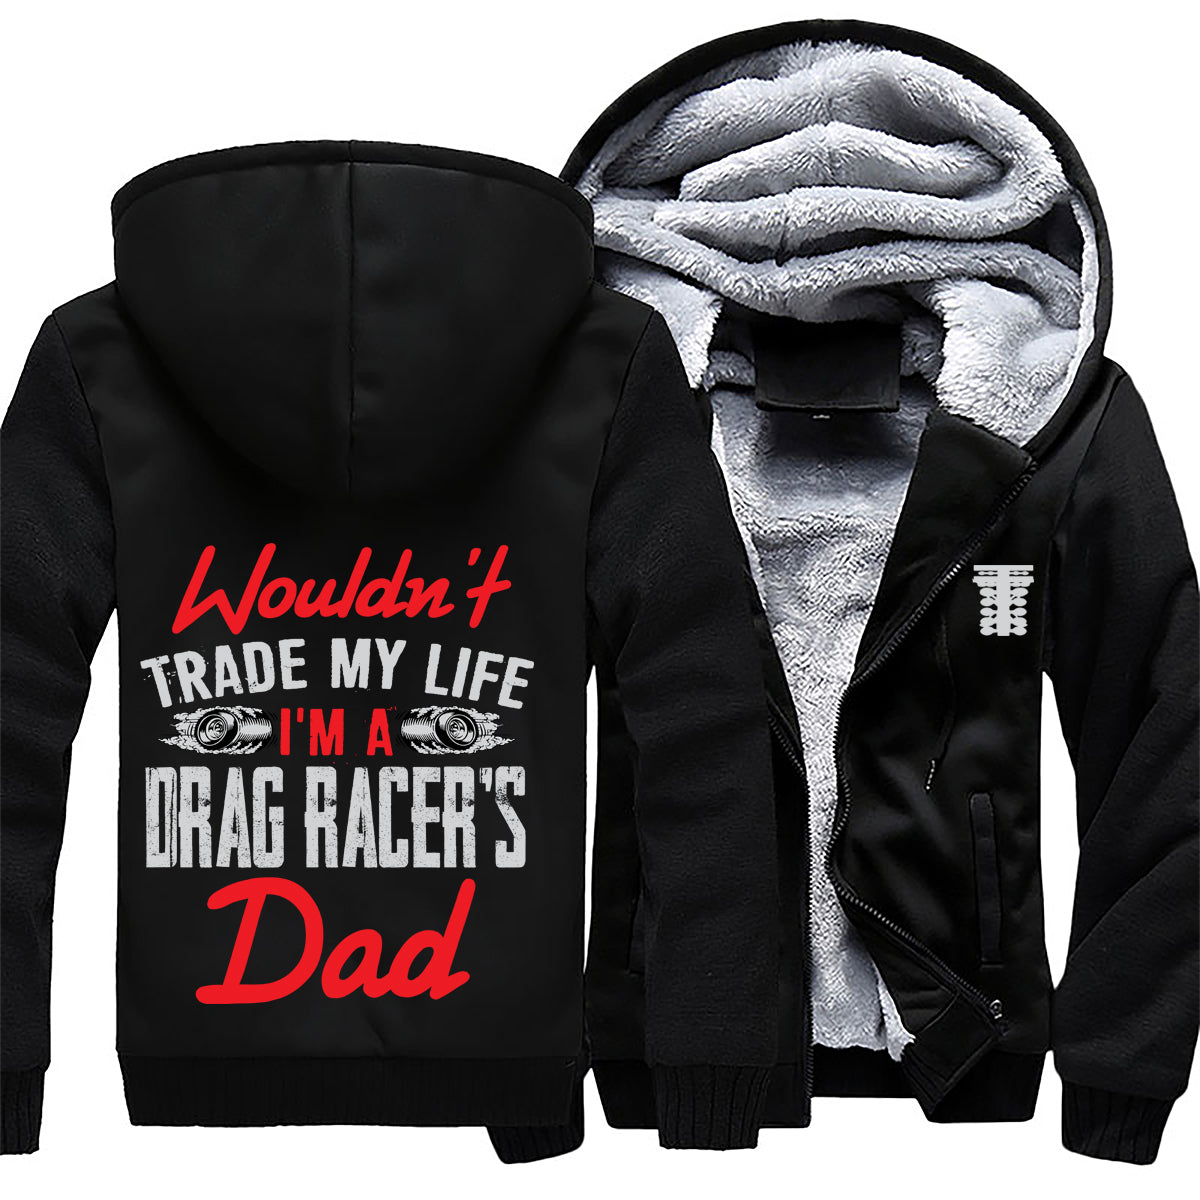 I'm A Drag Racer's Dad Jacket